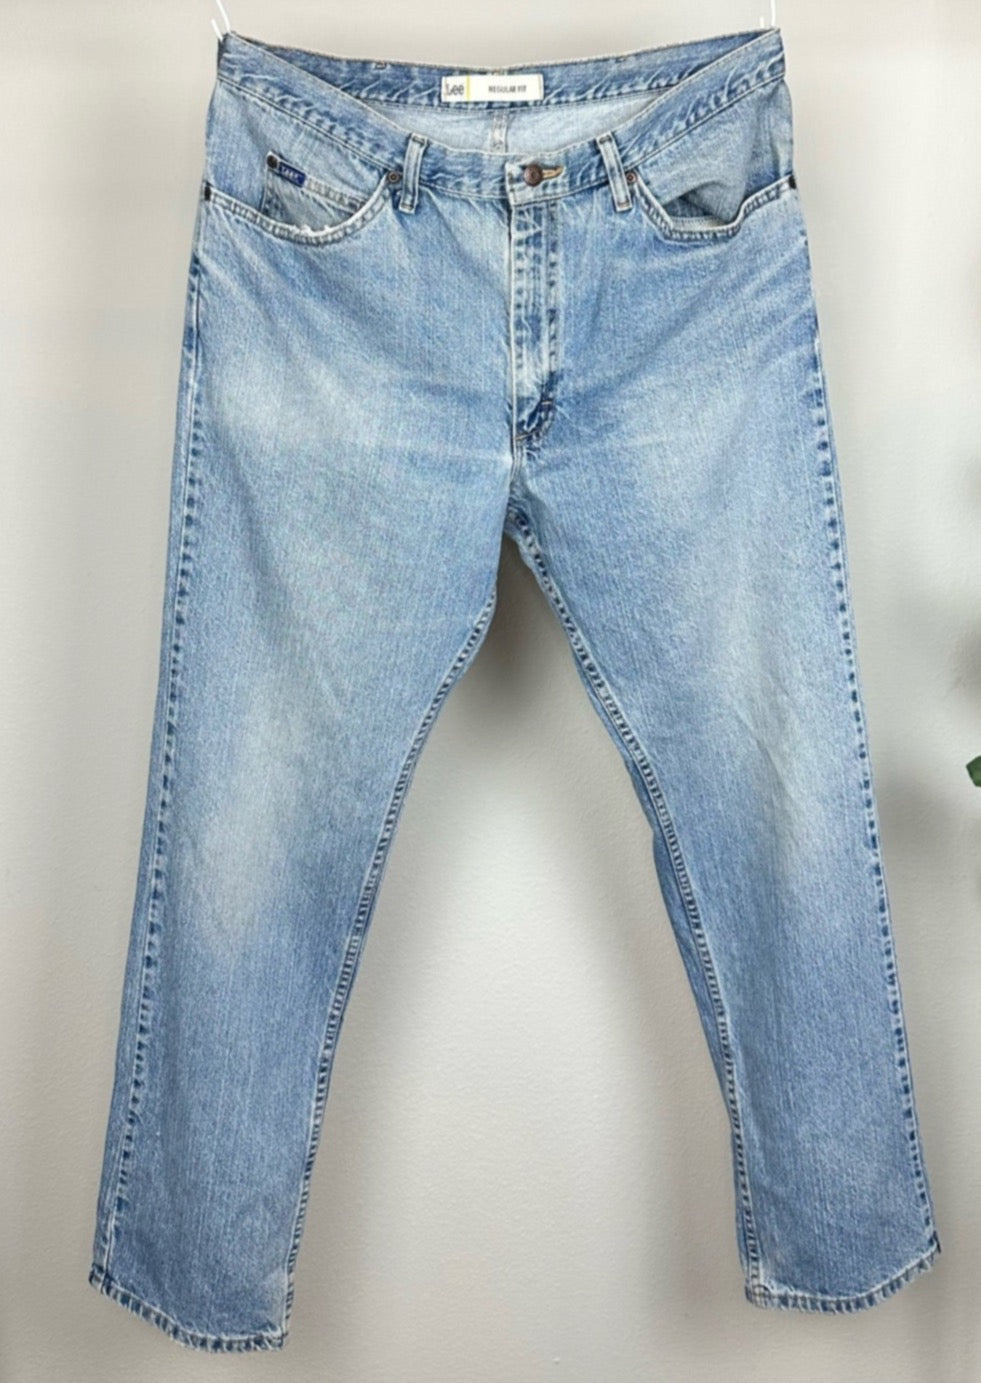 Regular Fit Men's Jeans by Lee